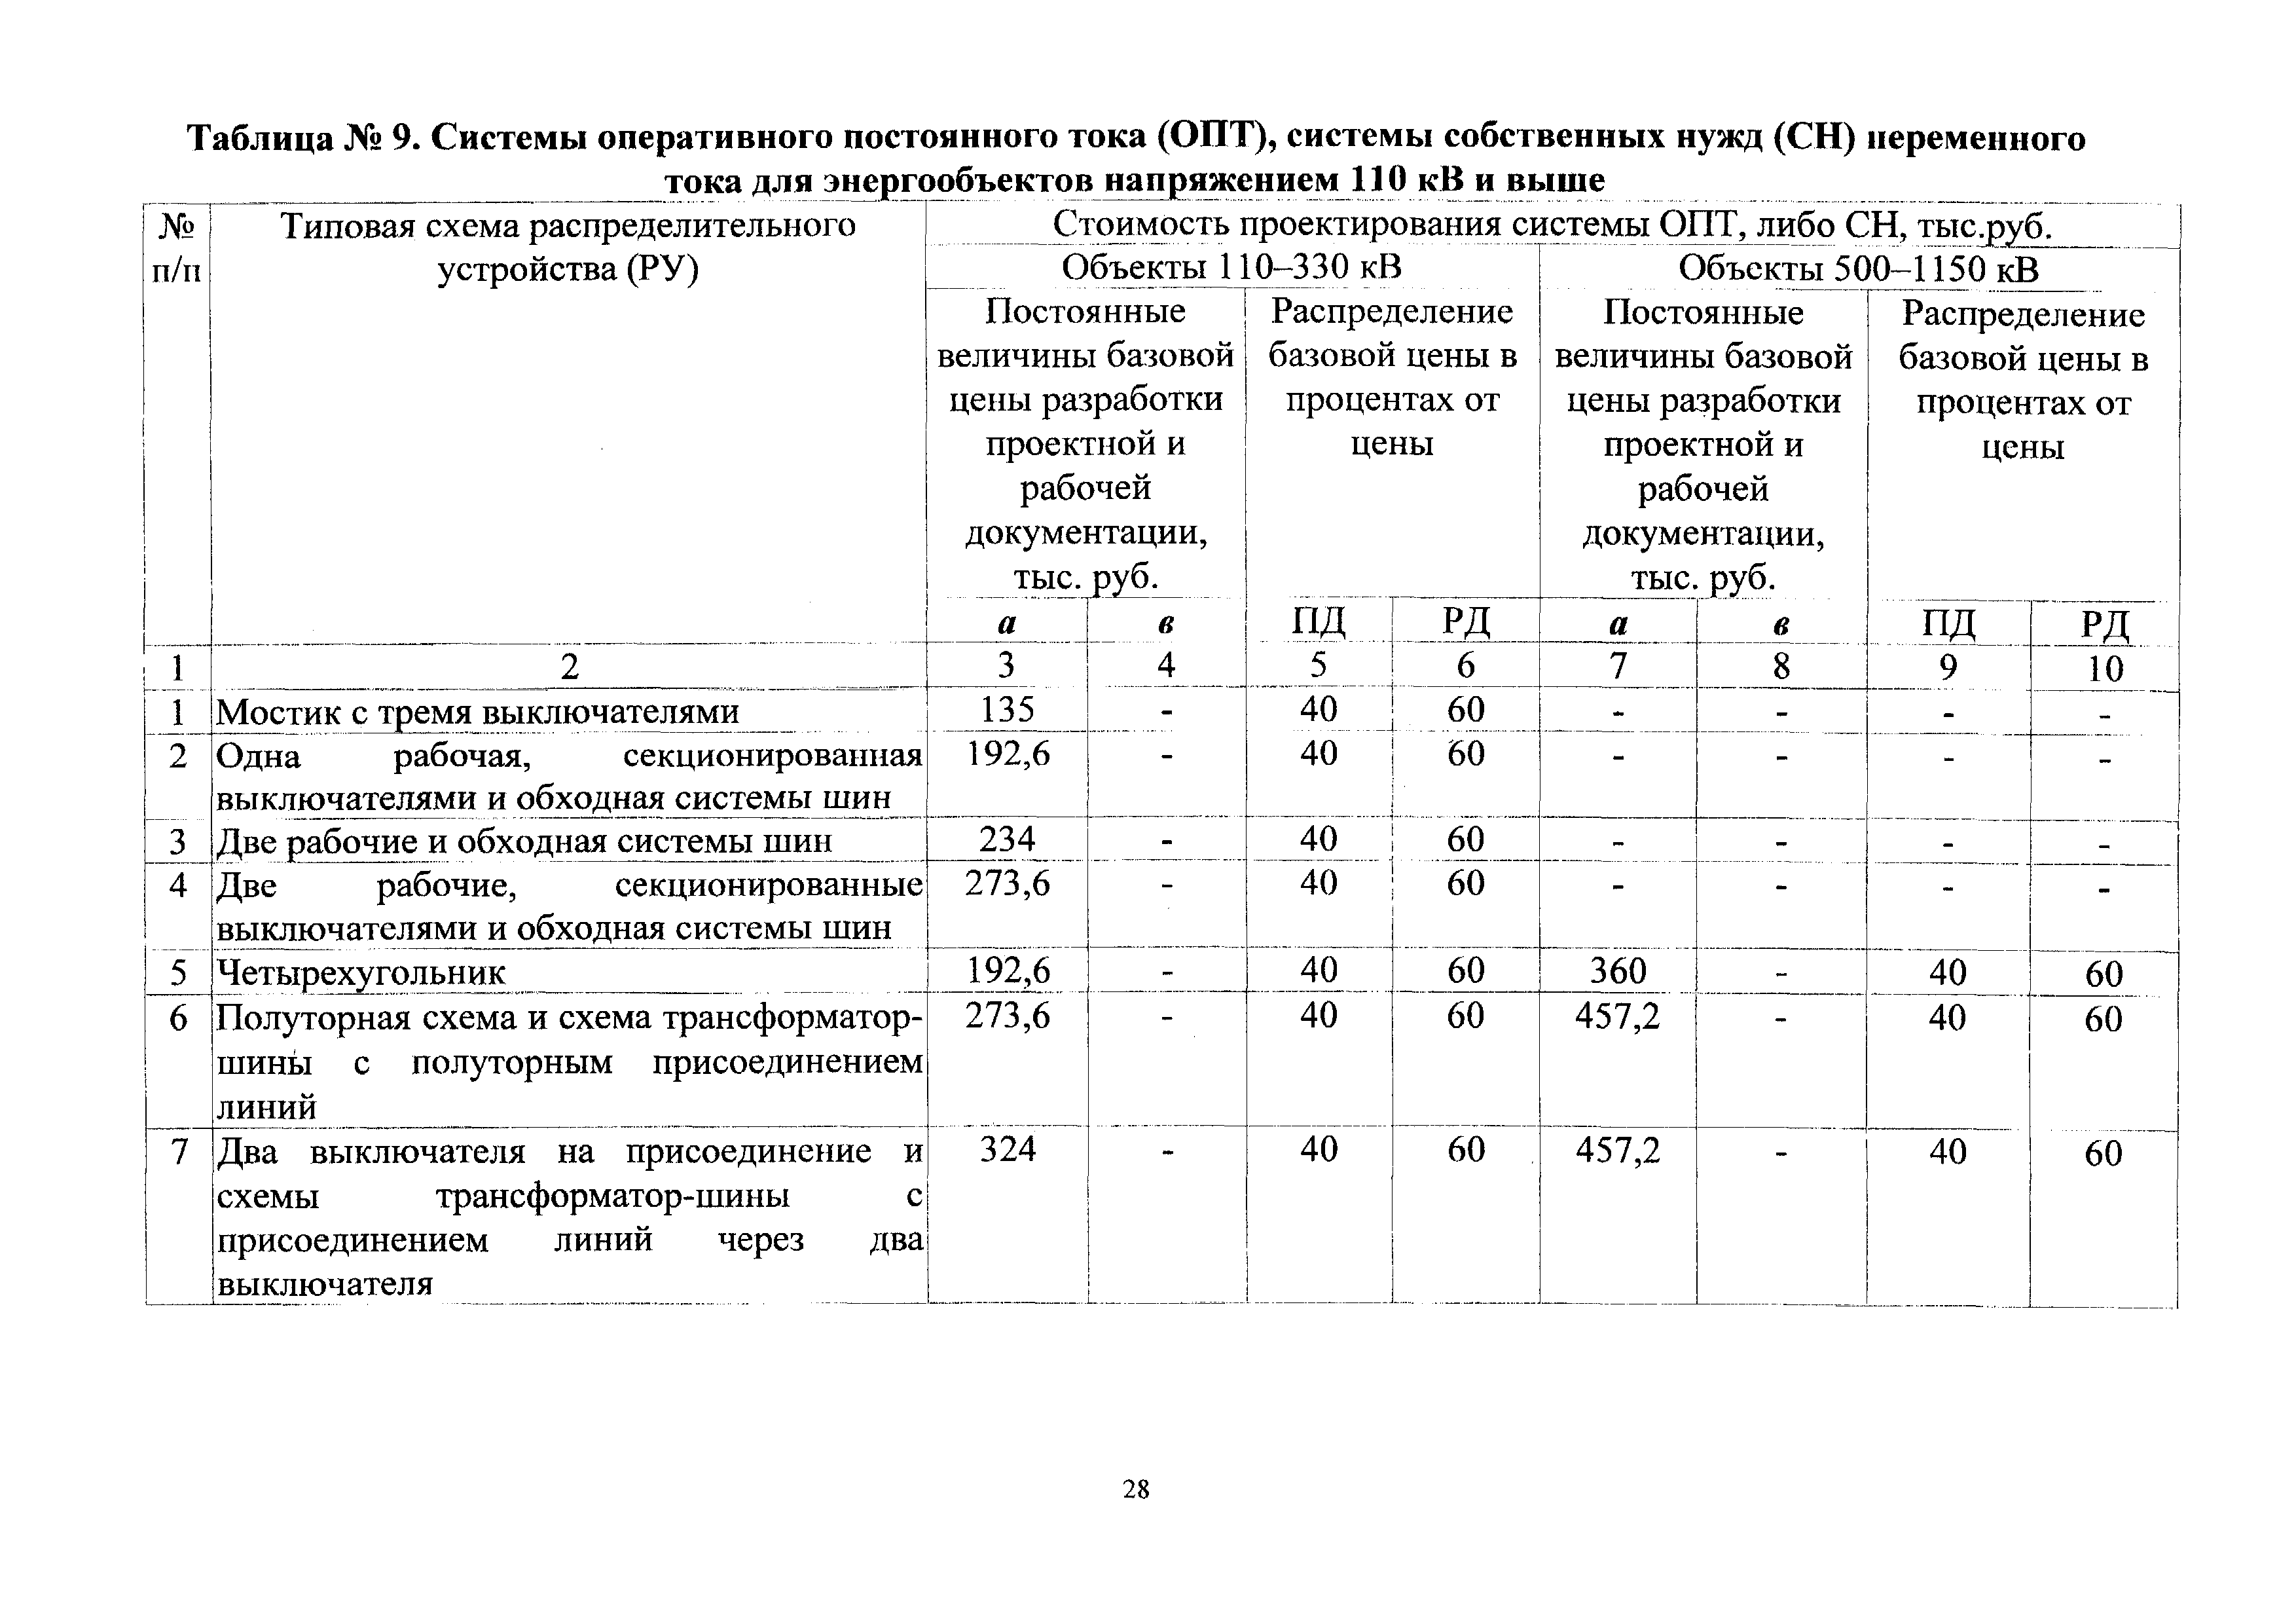 СБЦП 81-2001-24